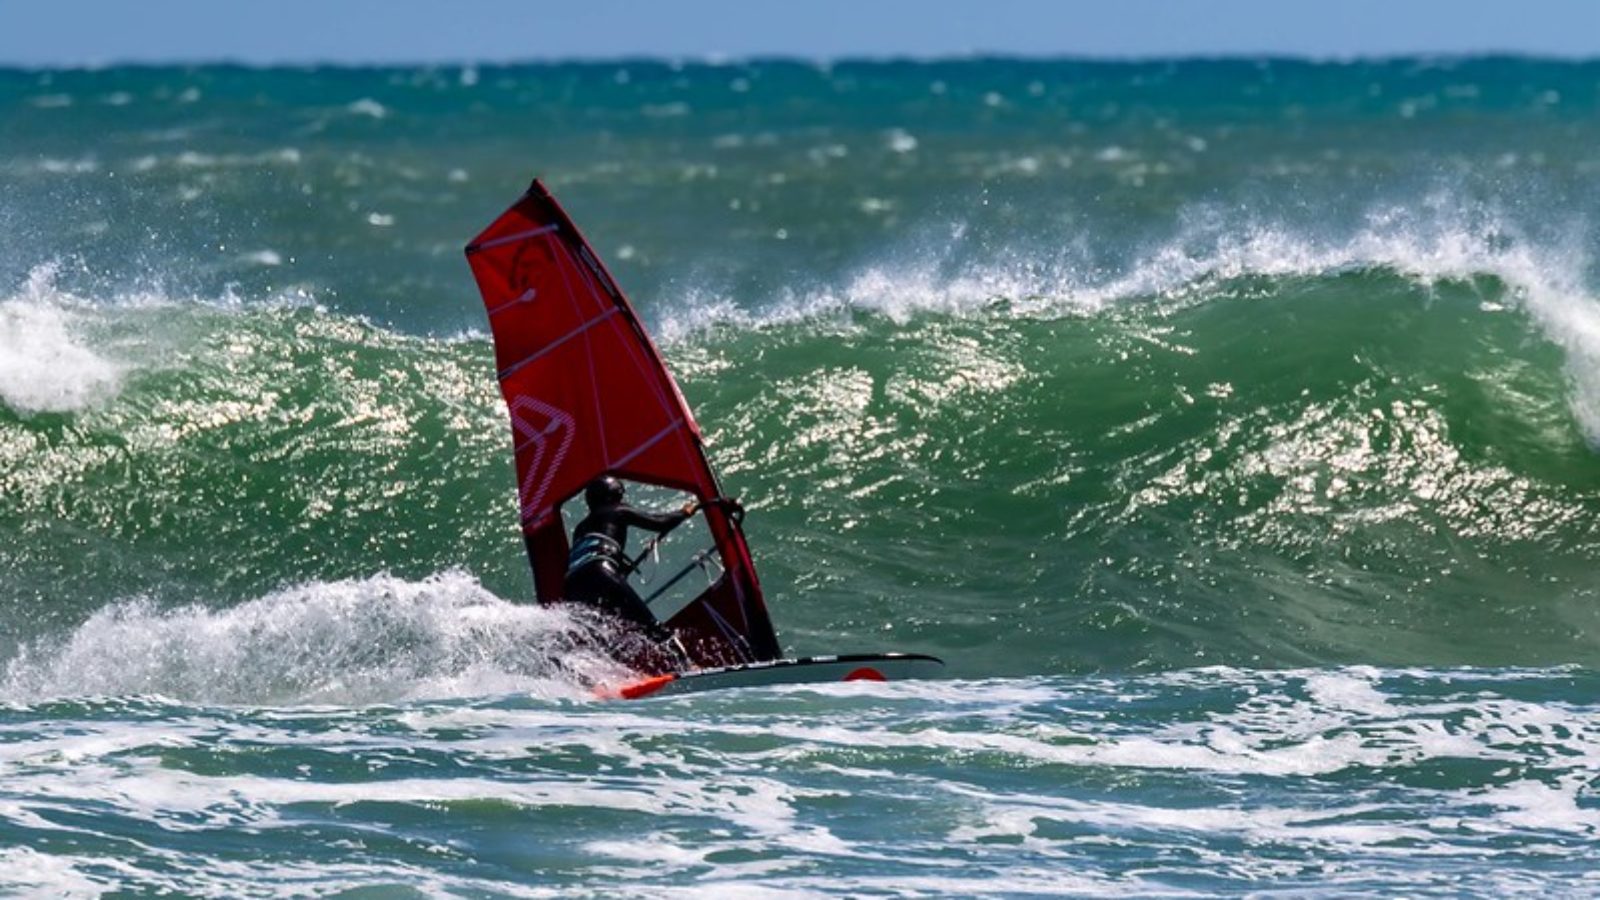 Windsurfer on a wave in Taranaki, New Zealand